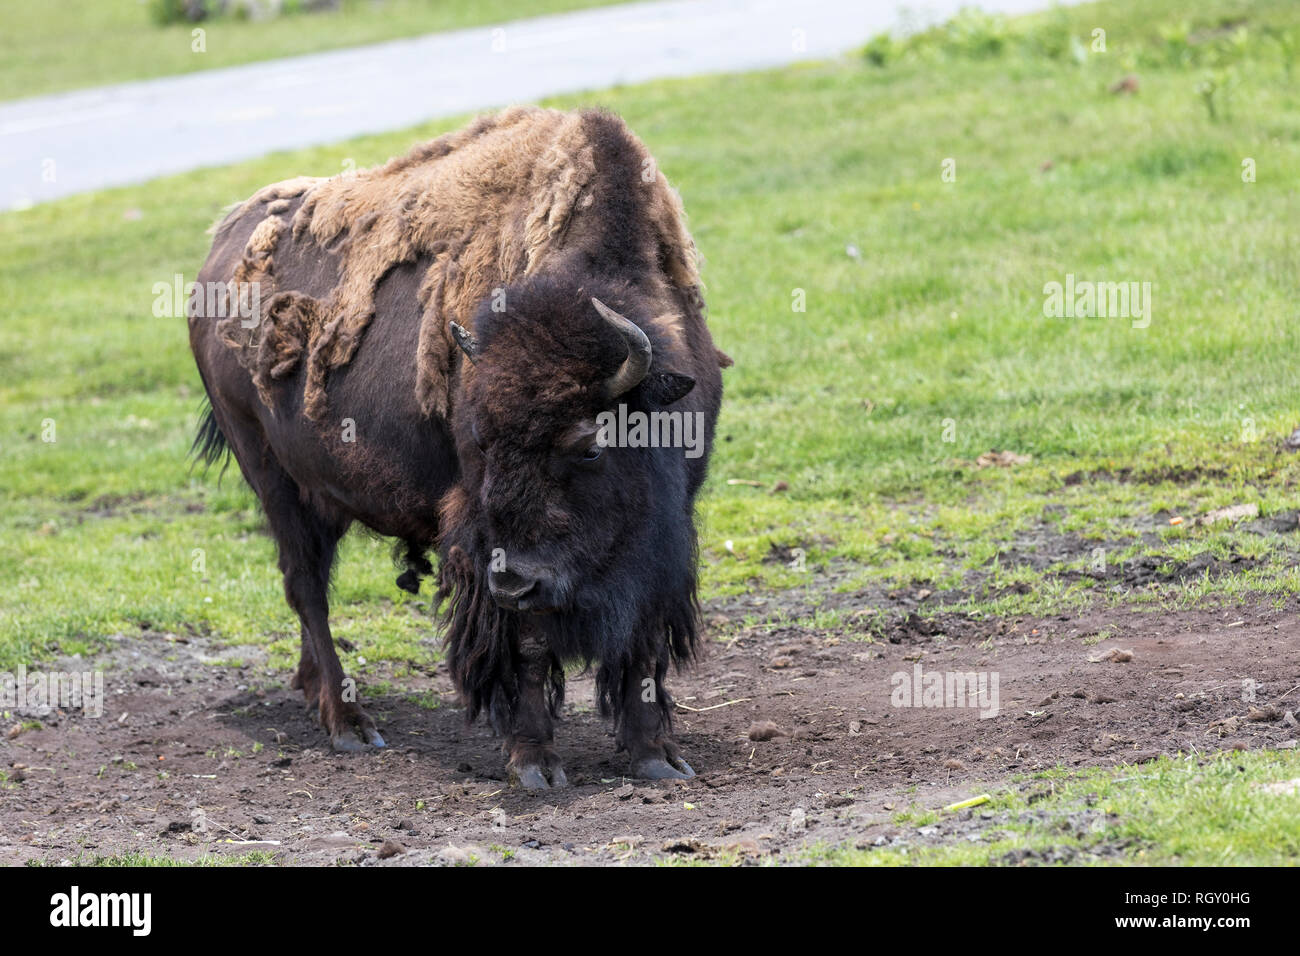 Bison (Buffalo), ist ein riesiges Tier mit einer Schulter Hump, riesiger Kopf und Haare, die länger in der Front ist als hinten. Stockfoto